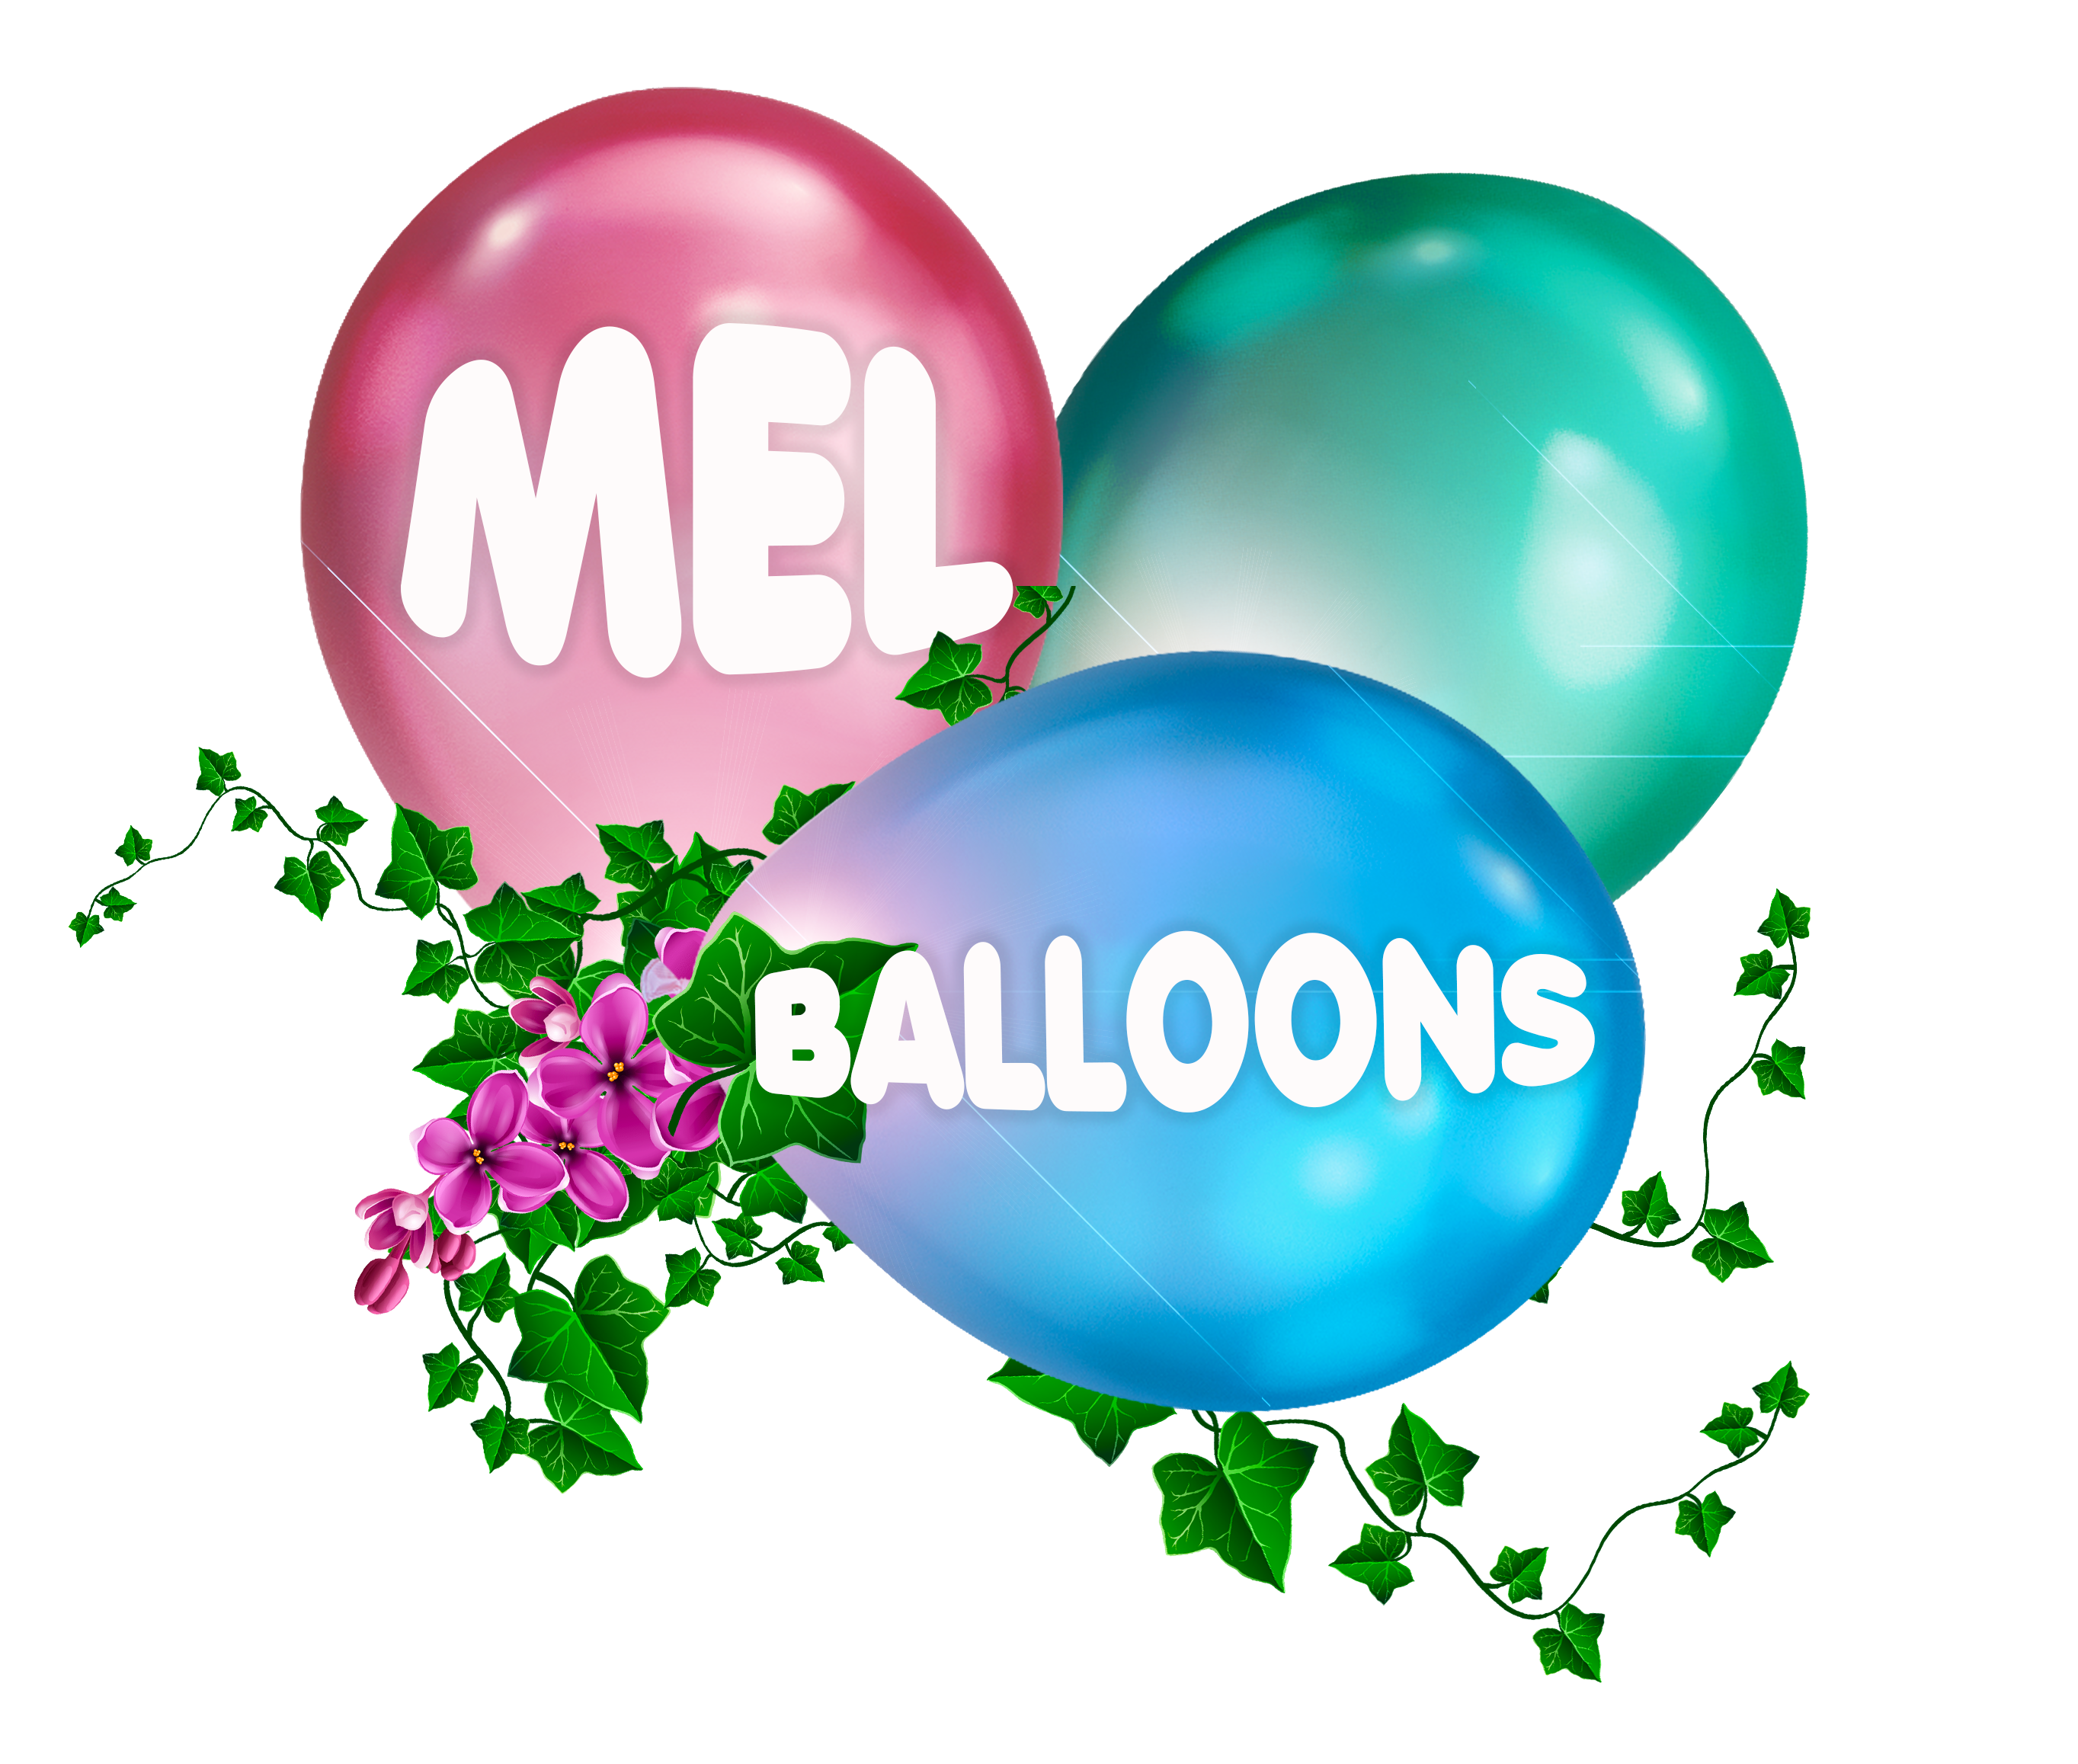 Mel Balloons